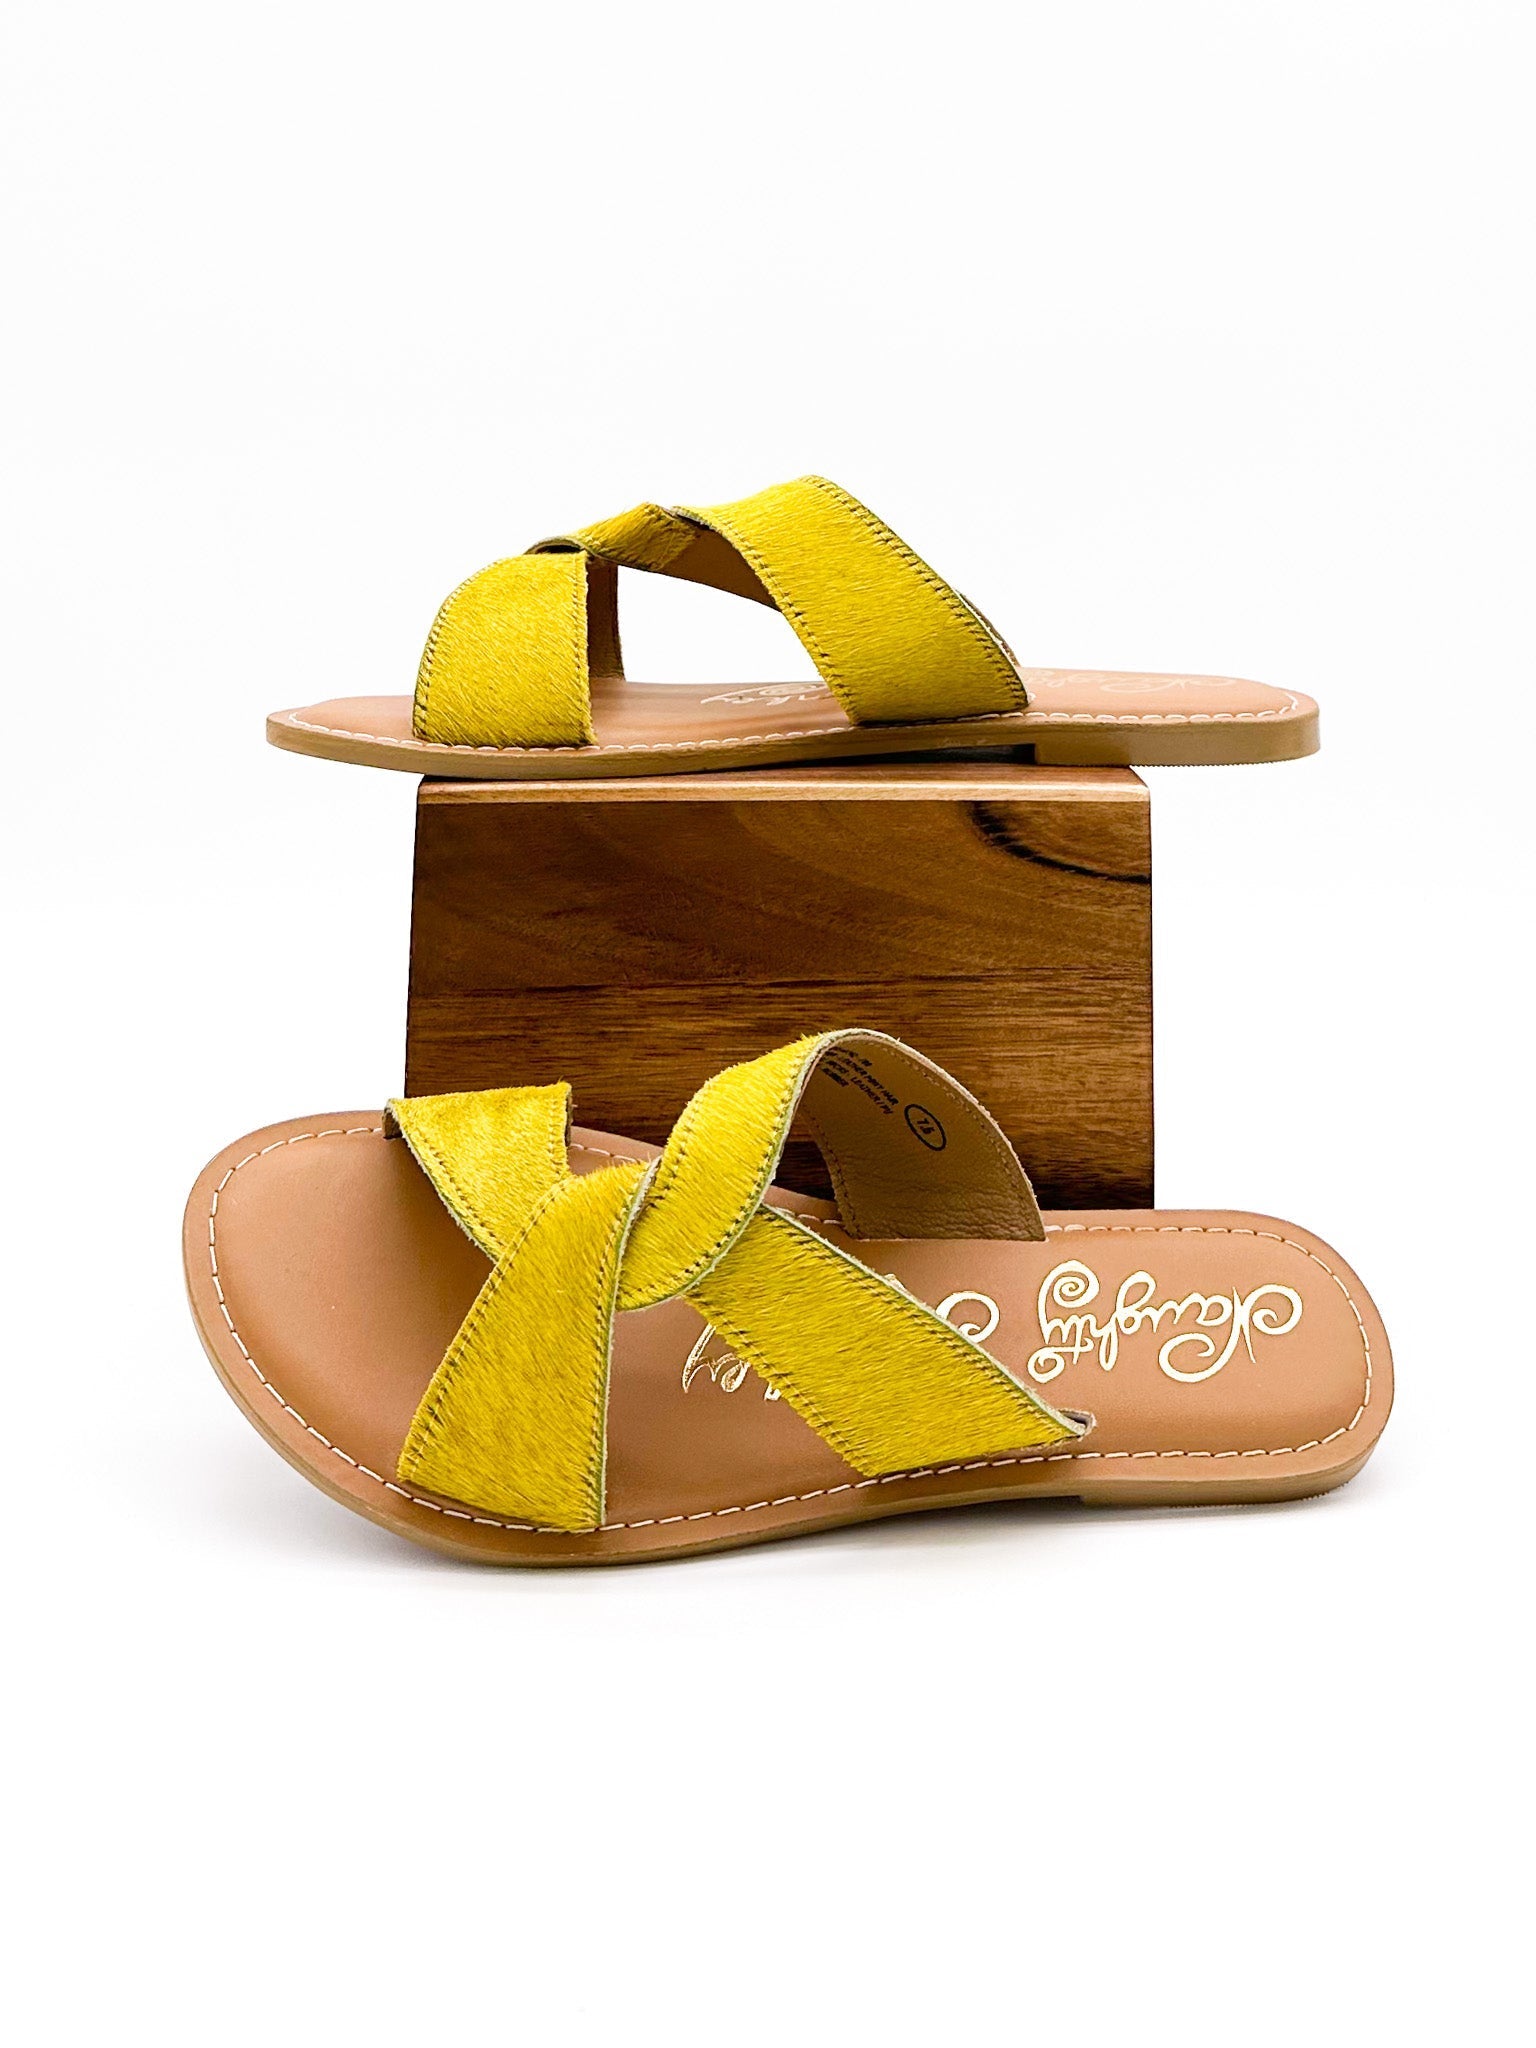 Conga Sandal in Yellow